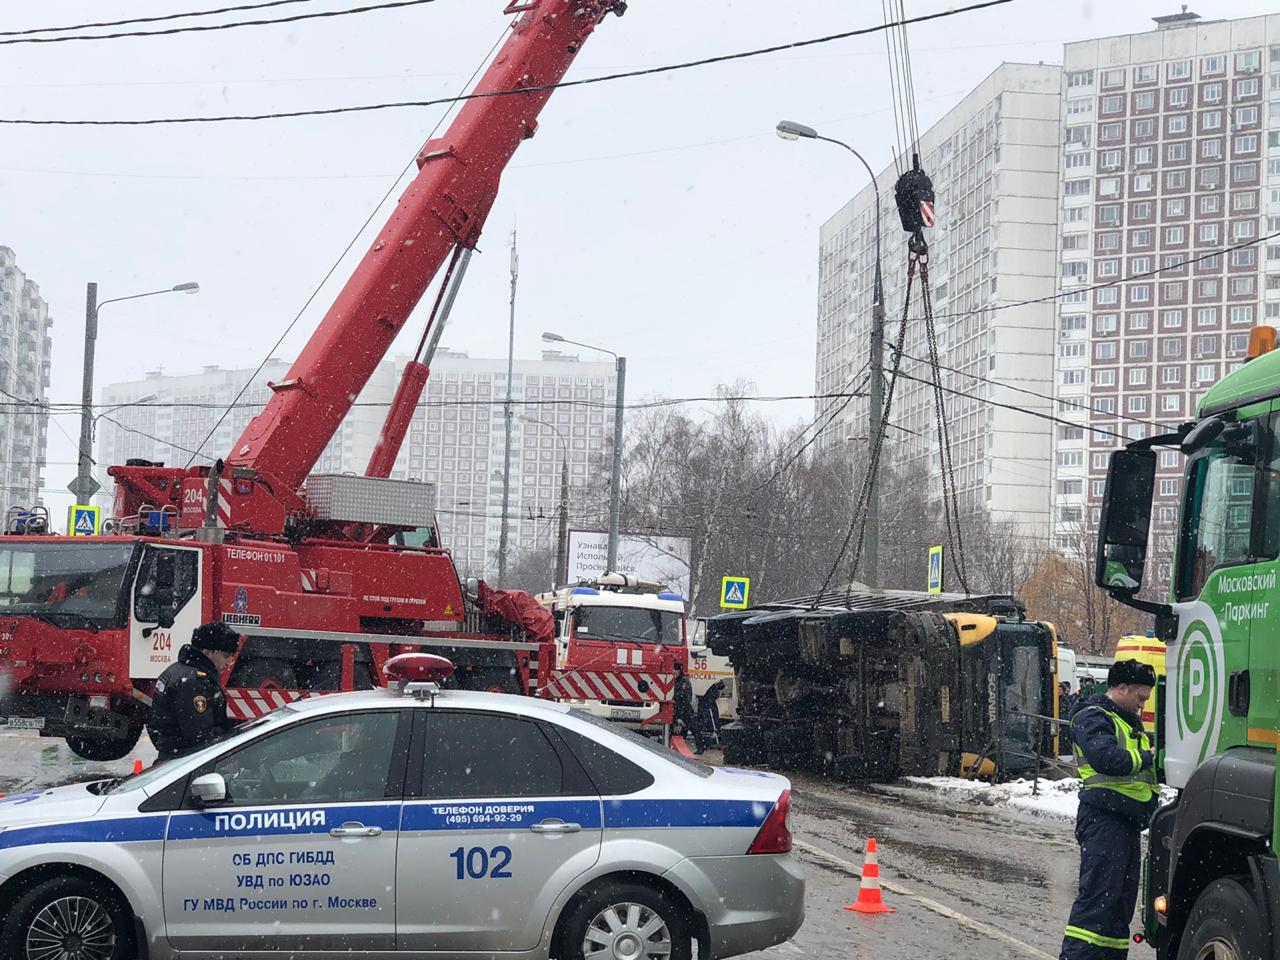 Москва новости сейчас происшествия сегодня. Авария в Ясенево сегодня на перекрестке. Ясенево происшествия сегодня.